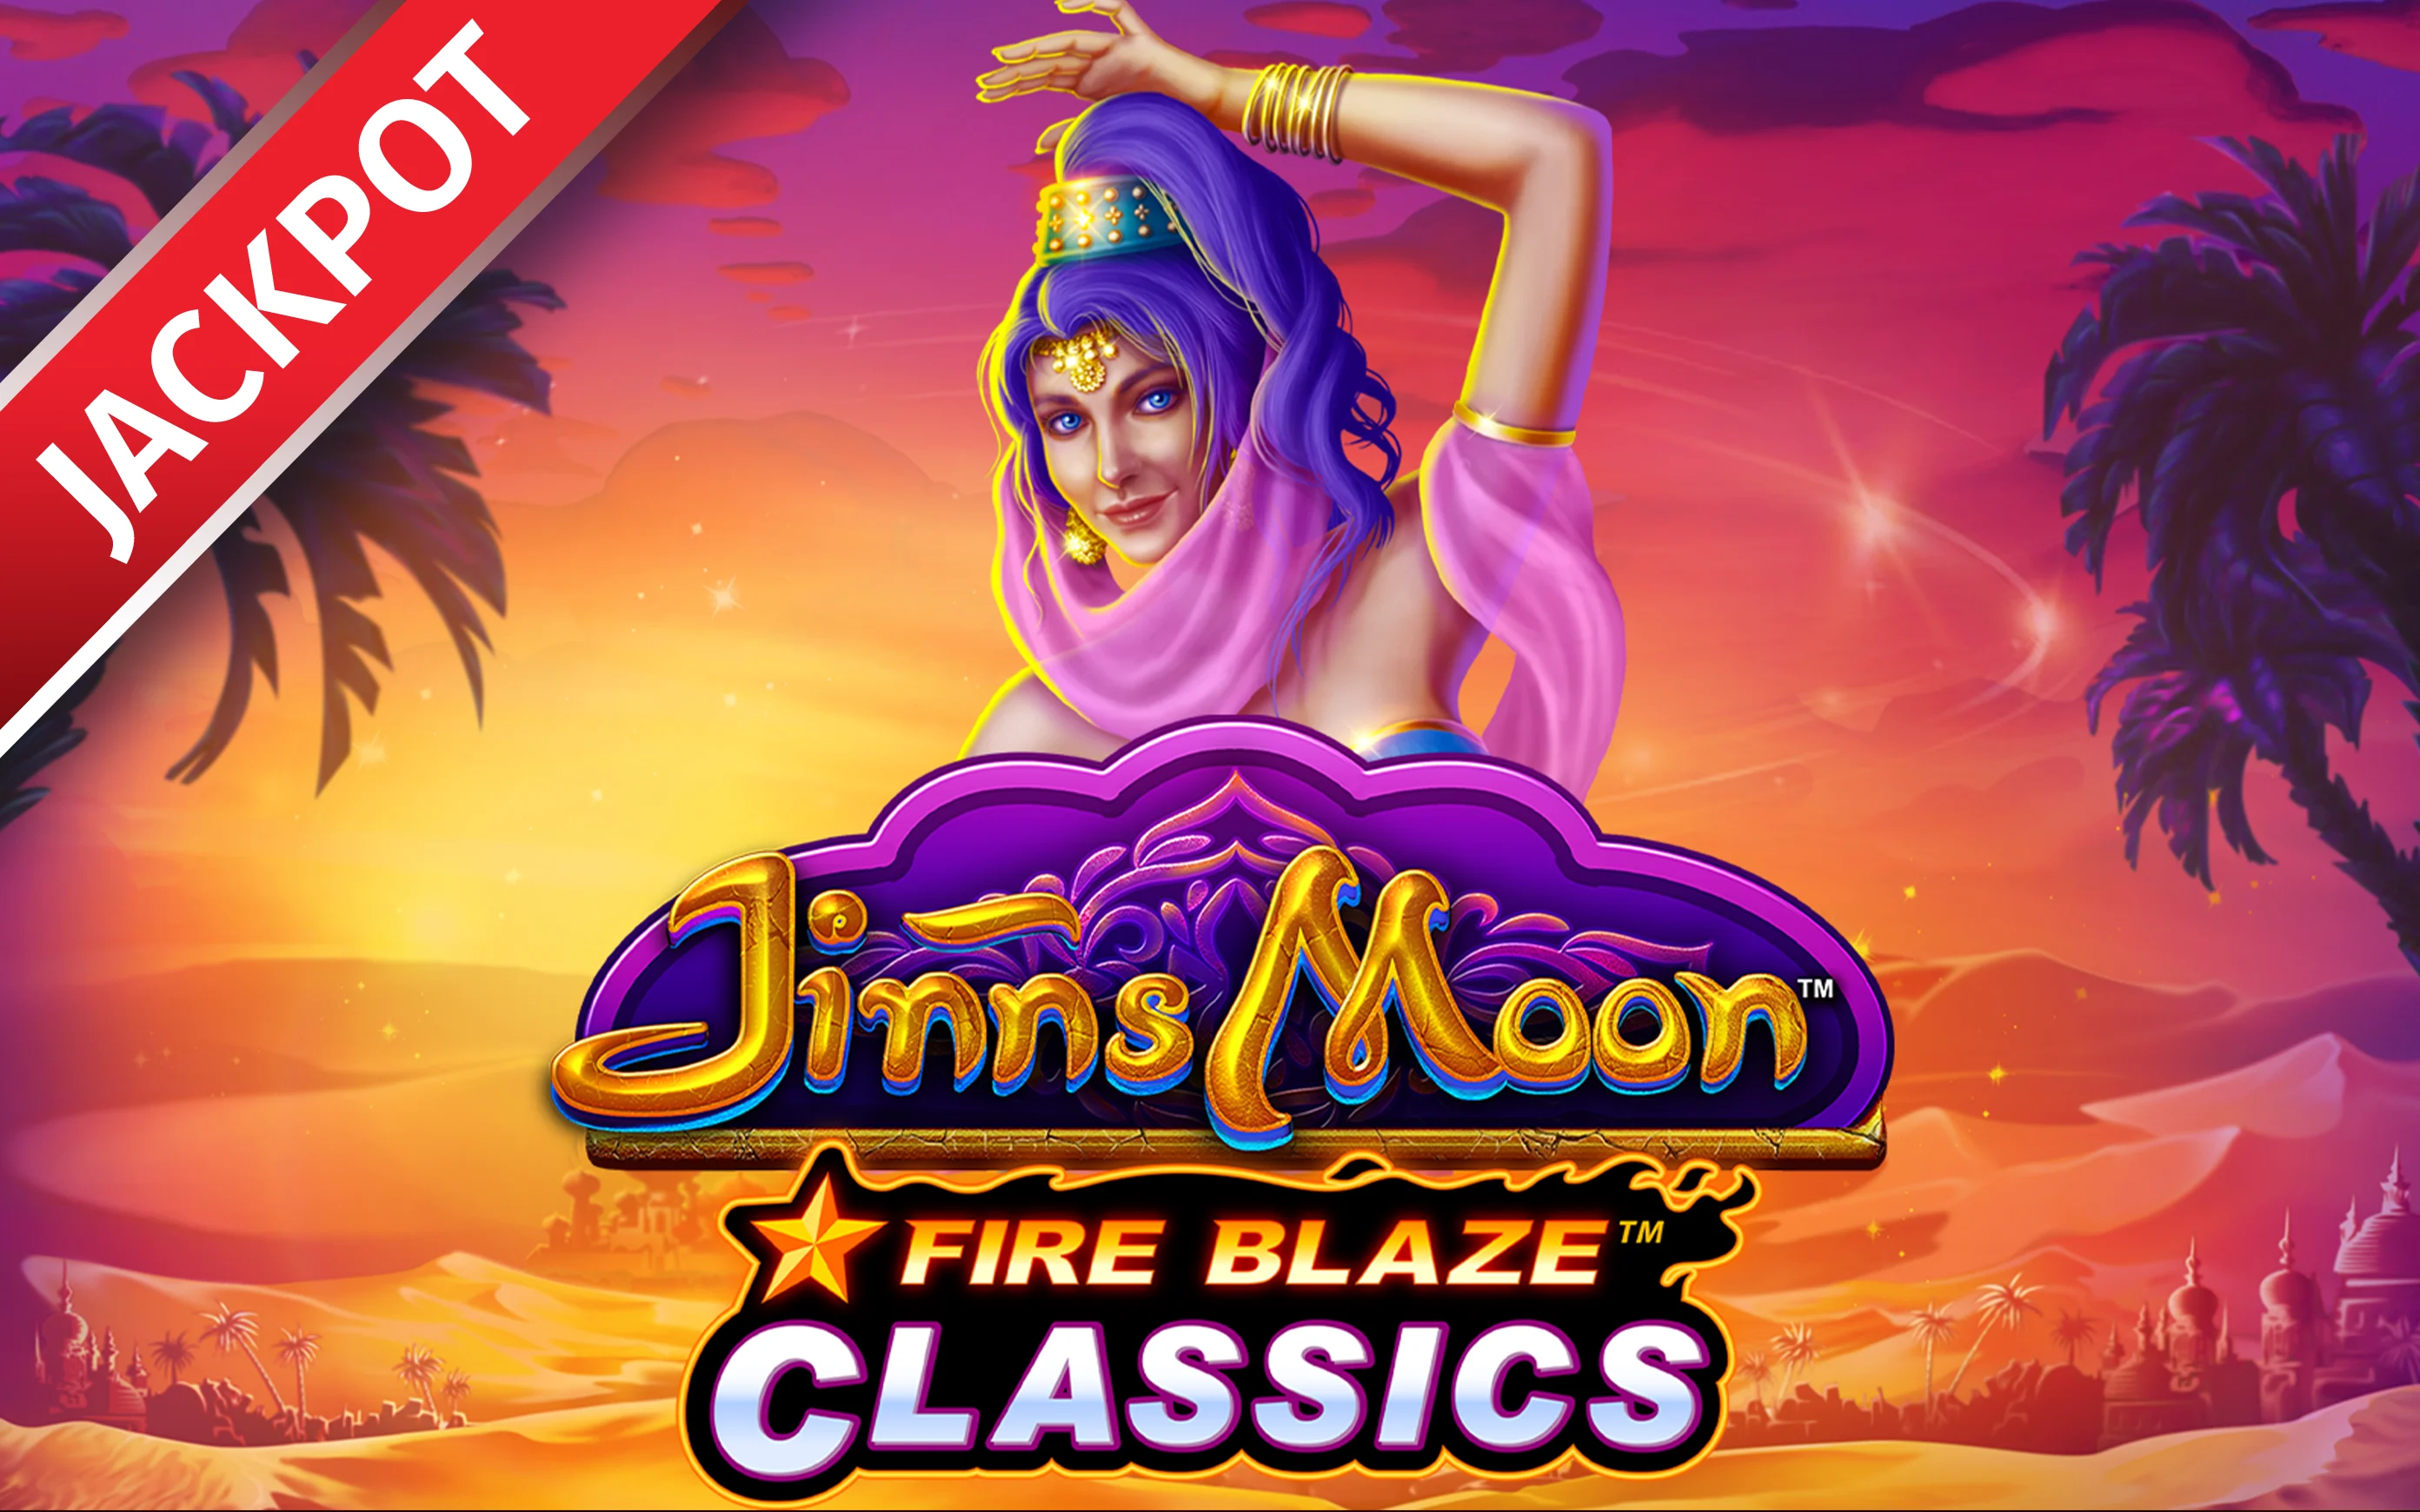 Spielen Sie Fire Blaze: Jinns Moon auf Starcasino.be-Online-Casino